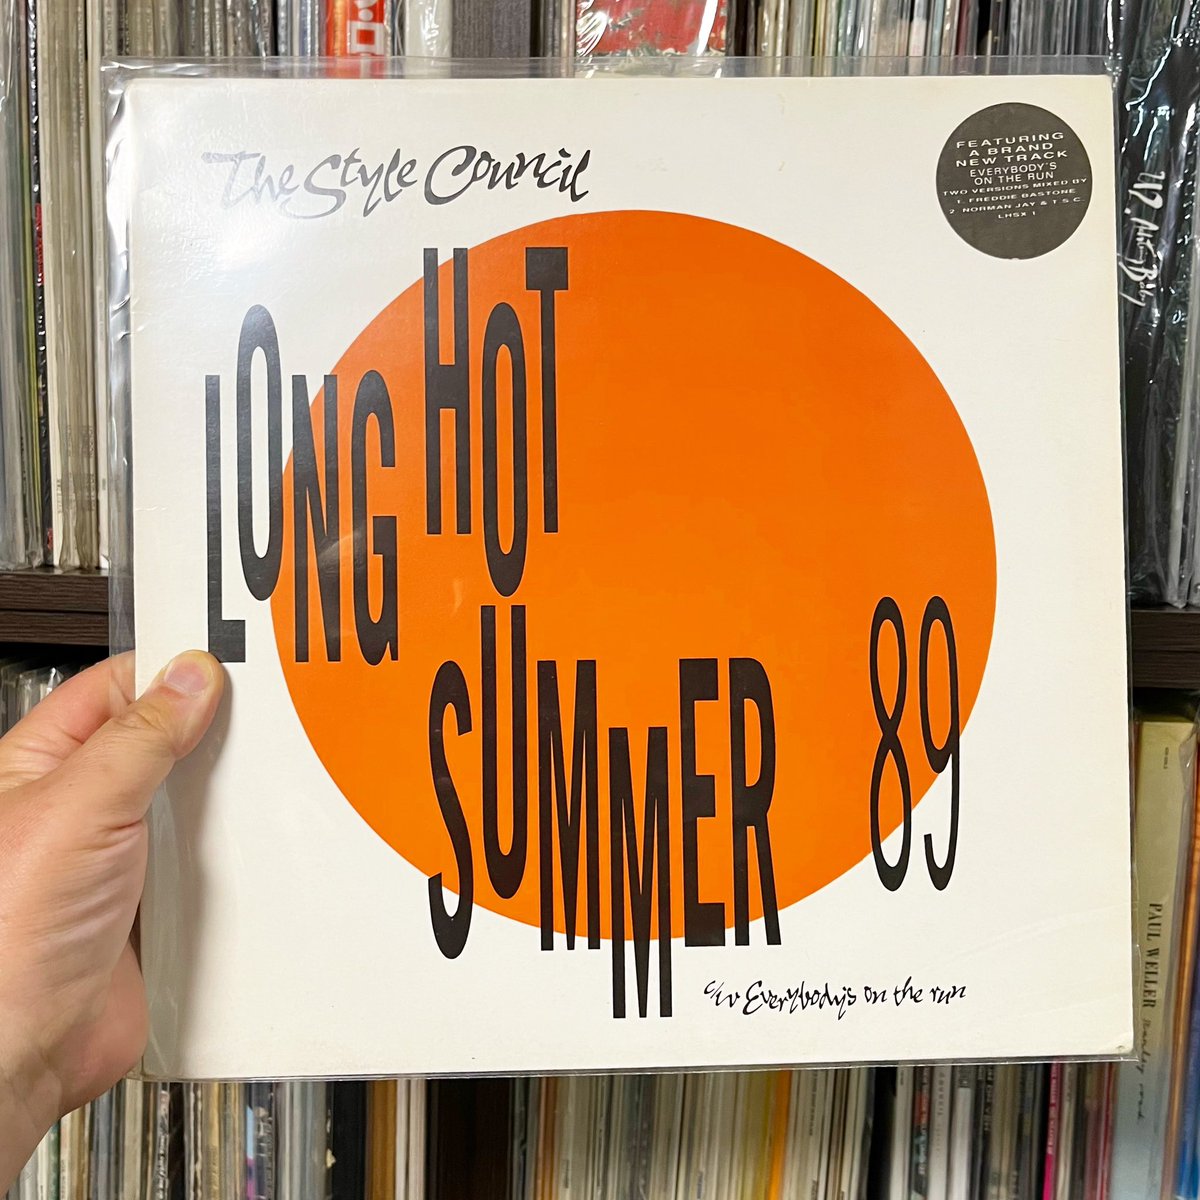 #ReleasedOnThisDay 
The Style Council - Long Hot Summer 89 (1989-5-15)
悪いわけじゃないがオリジナルの瑞々しさというか透明感みたいなものが、コレには無いと思うんだよ
だいたい前年のシングルカップリングのバージョンを新作みたいに出すのもどうかと😂
#StyleCouncil #45rpm #vinylcollection